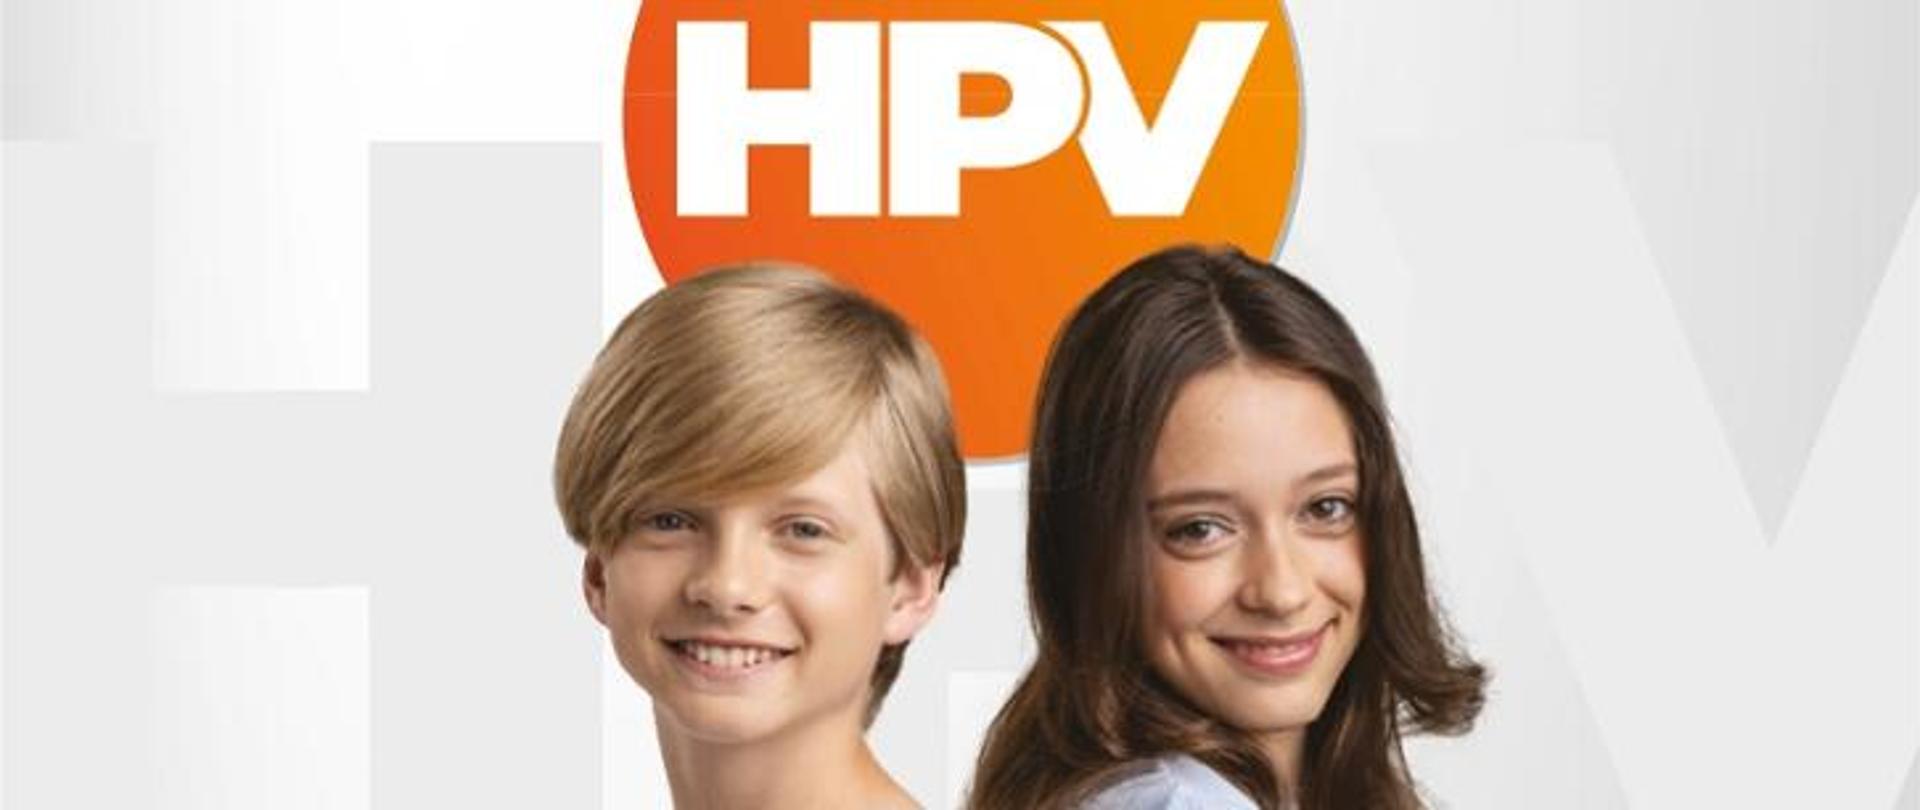 Na górze zdjęcia napis HPV w pomarańczowym kole, na dole strony młody chłopak po lewej i młoda dziewczyna po prawej strony (widoczne głowy oraz ramiona).